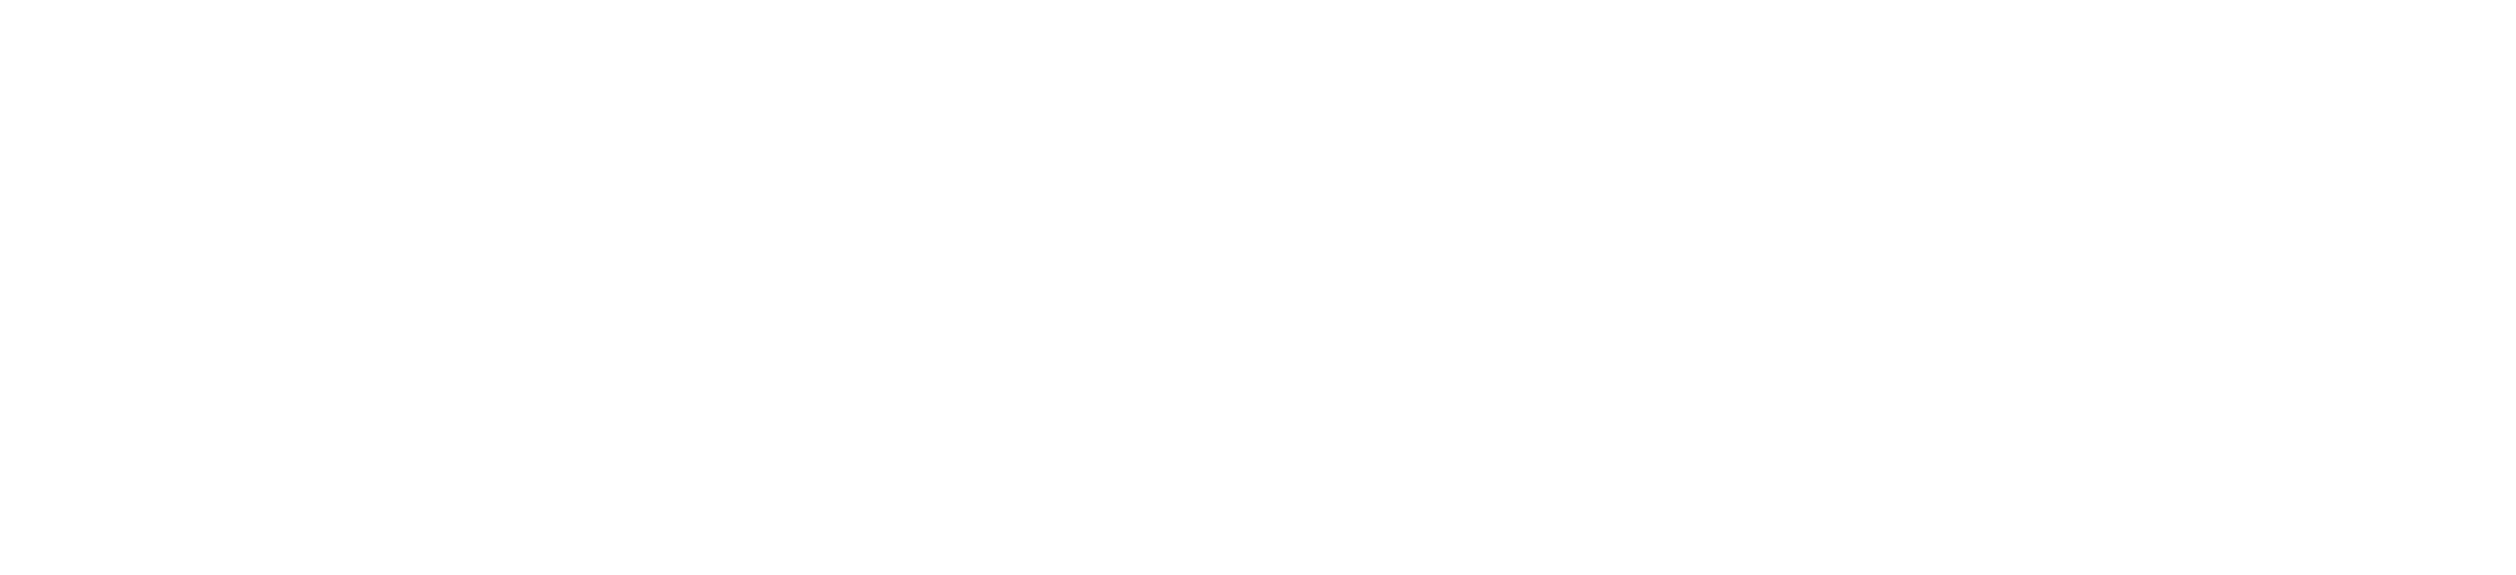 UN Environment World Conservation Monitoring Center logo